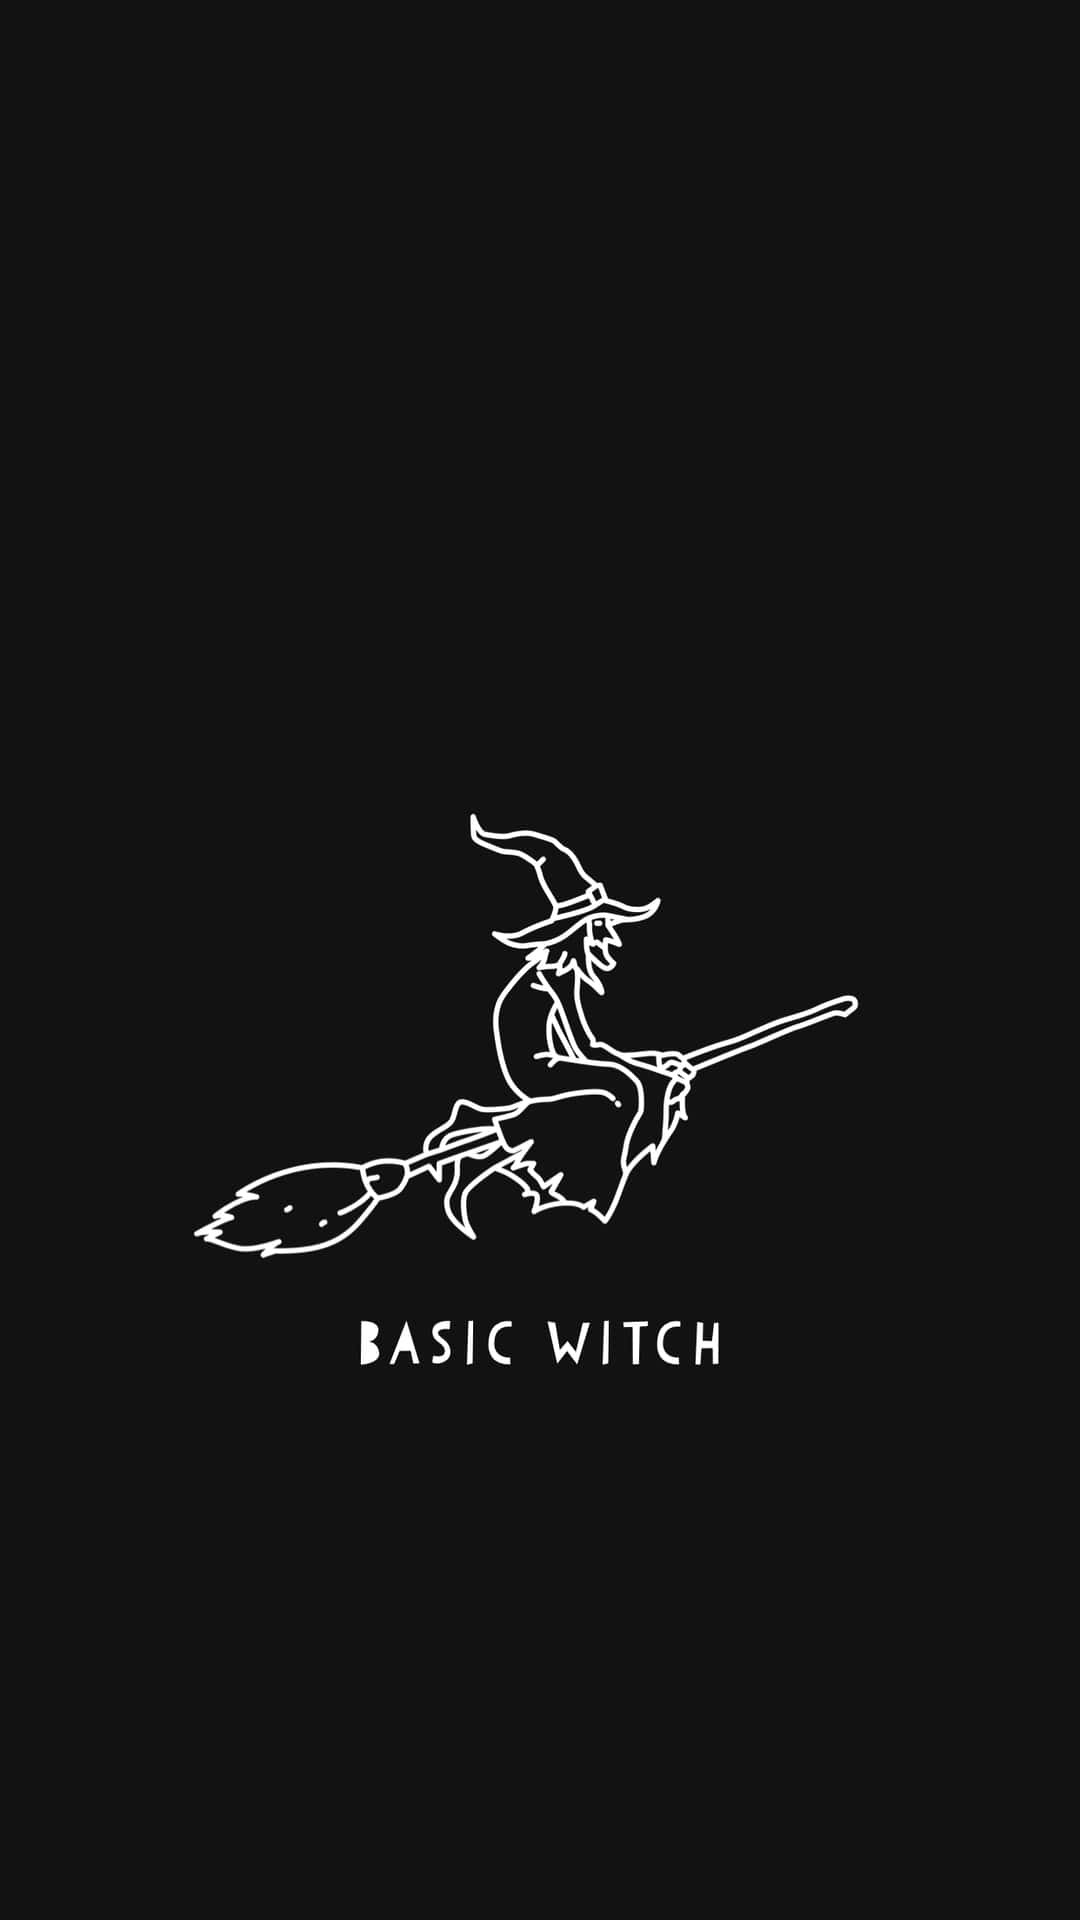 basic witch logo design